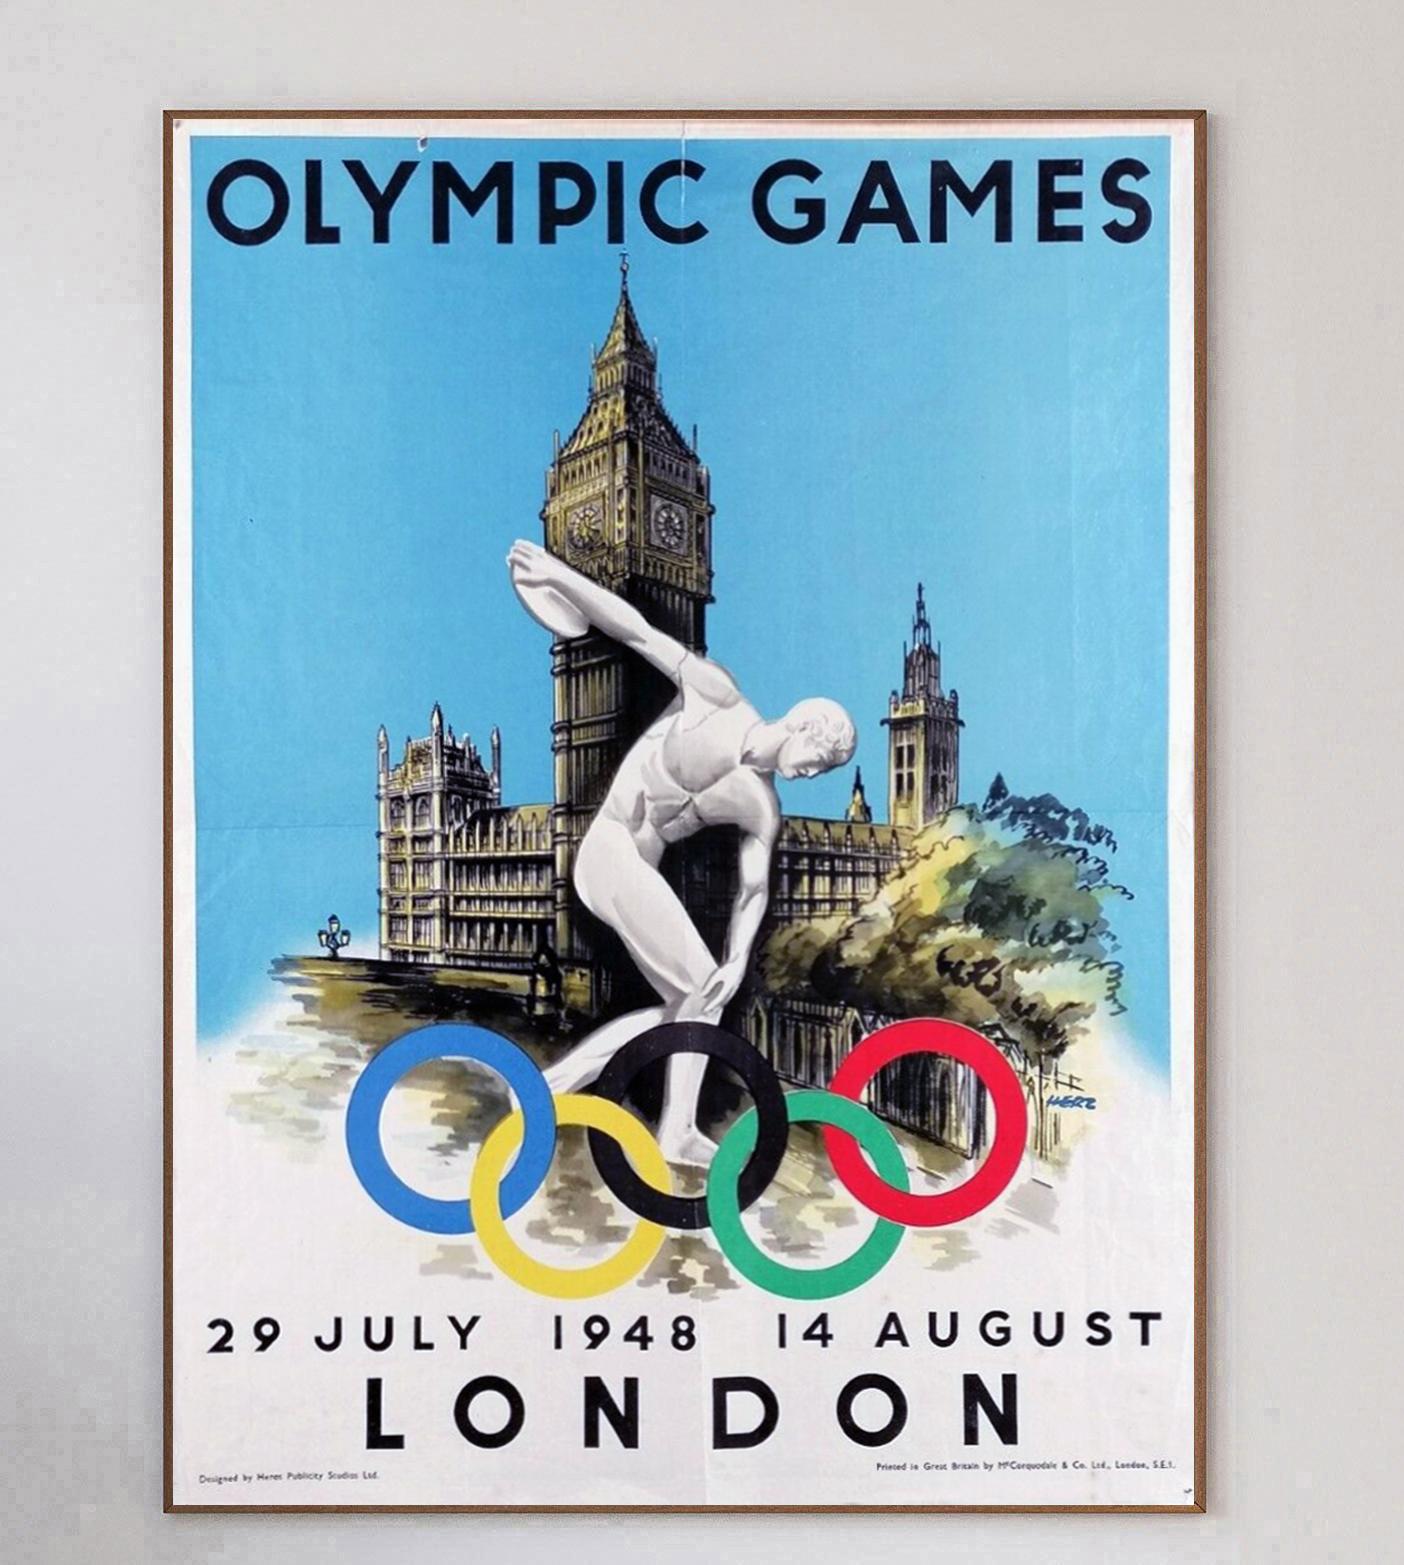 Premiers jeux après la Seconde Guerre mondiale et premiers Jeux organisés par la Grande-Bretagne, les Jeux Olympiques de 1948 se sont déroulés à Londres du 29 juillet au 14 août. Les États-Unis ont remporté les jeux avec le plus grand nombre de